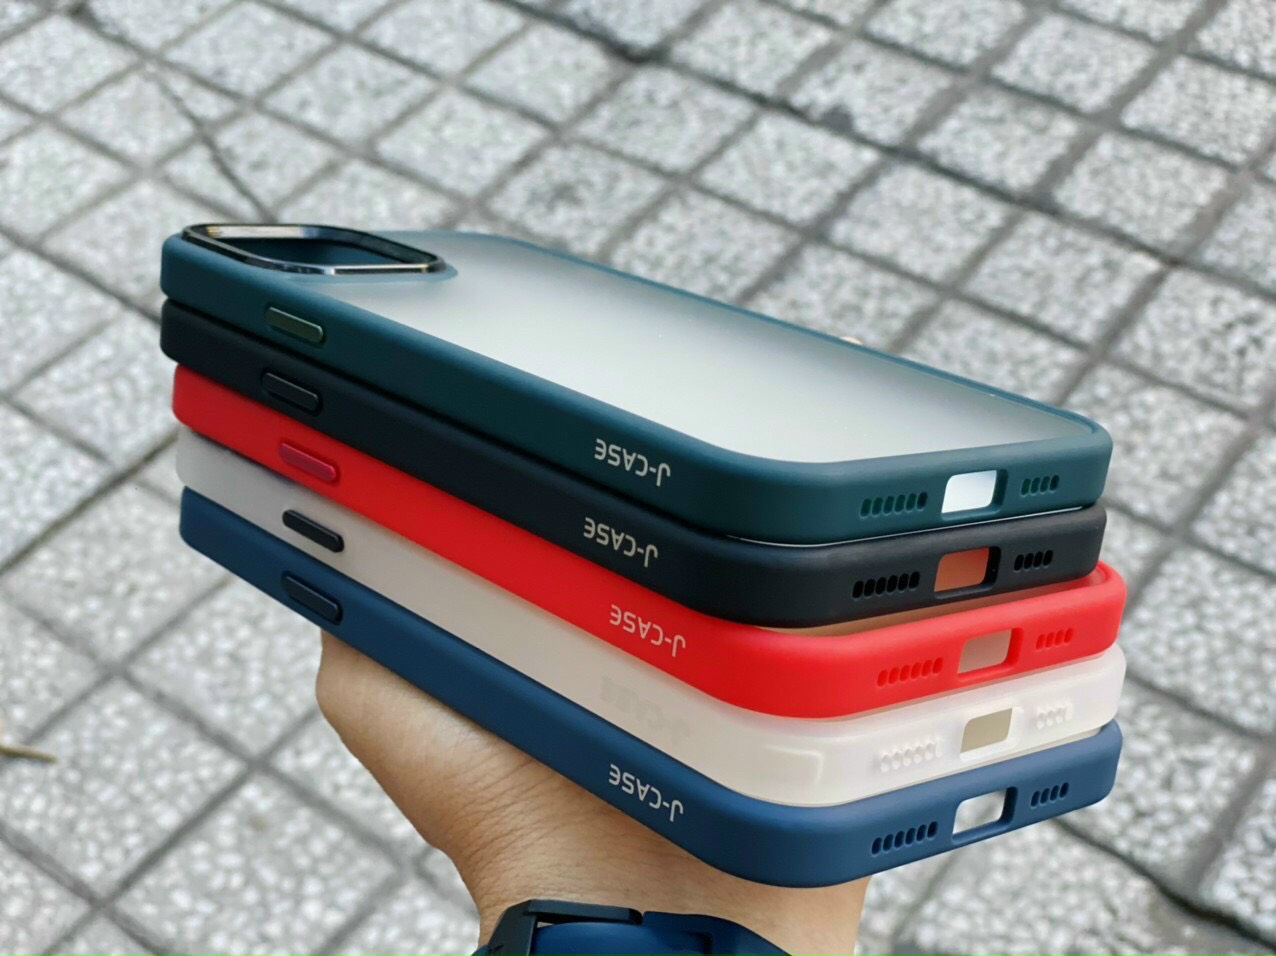 Ốp lưng viền màu lưng nhám trong chống sốc hiệu J-Case dành cho iPhone 11 Pro Max, 12 Pro Max( hàng chính hãng)